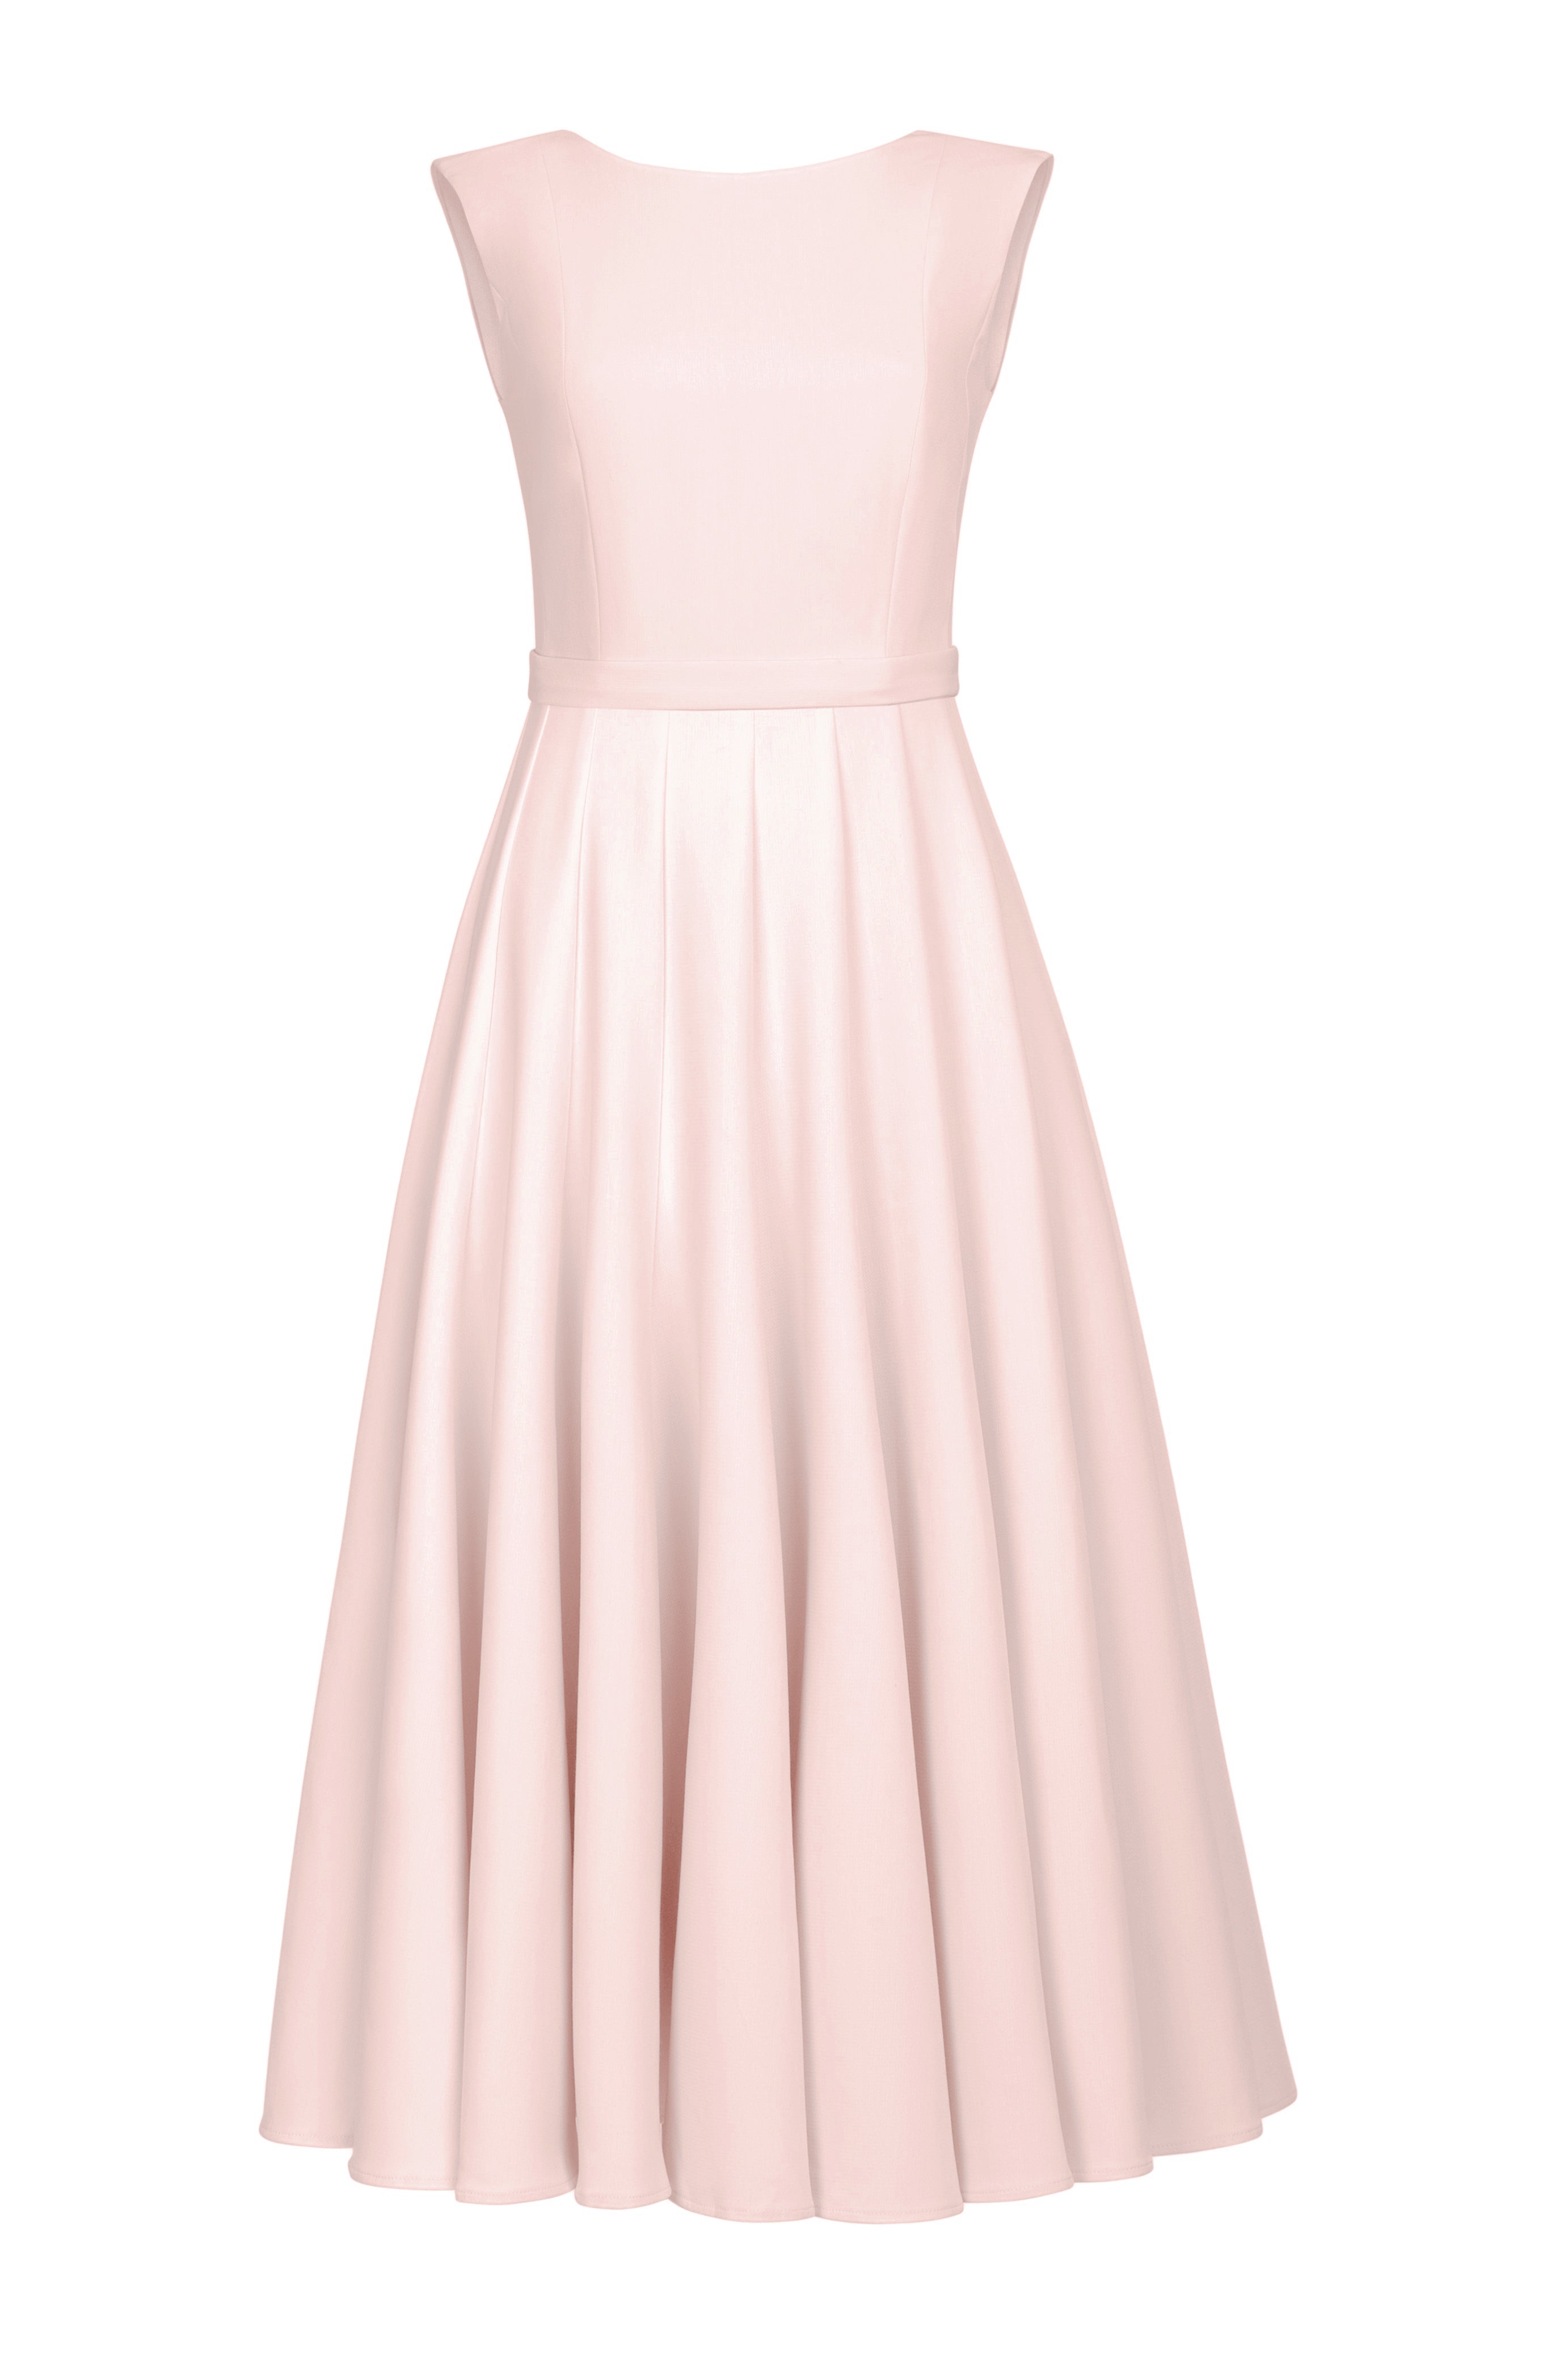 ARIOSE pastel pink midi dress